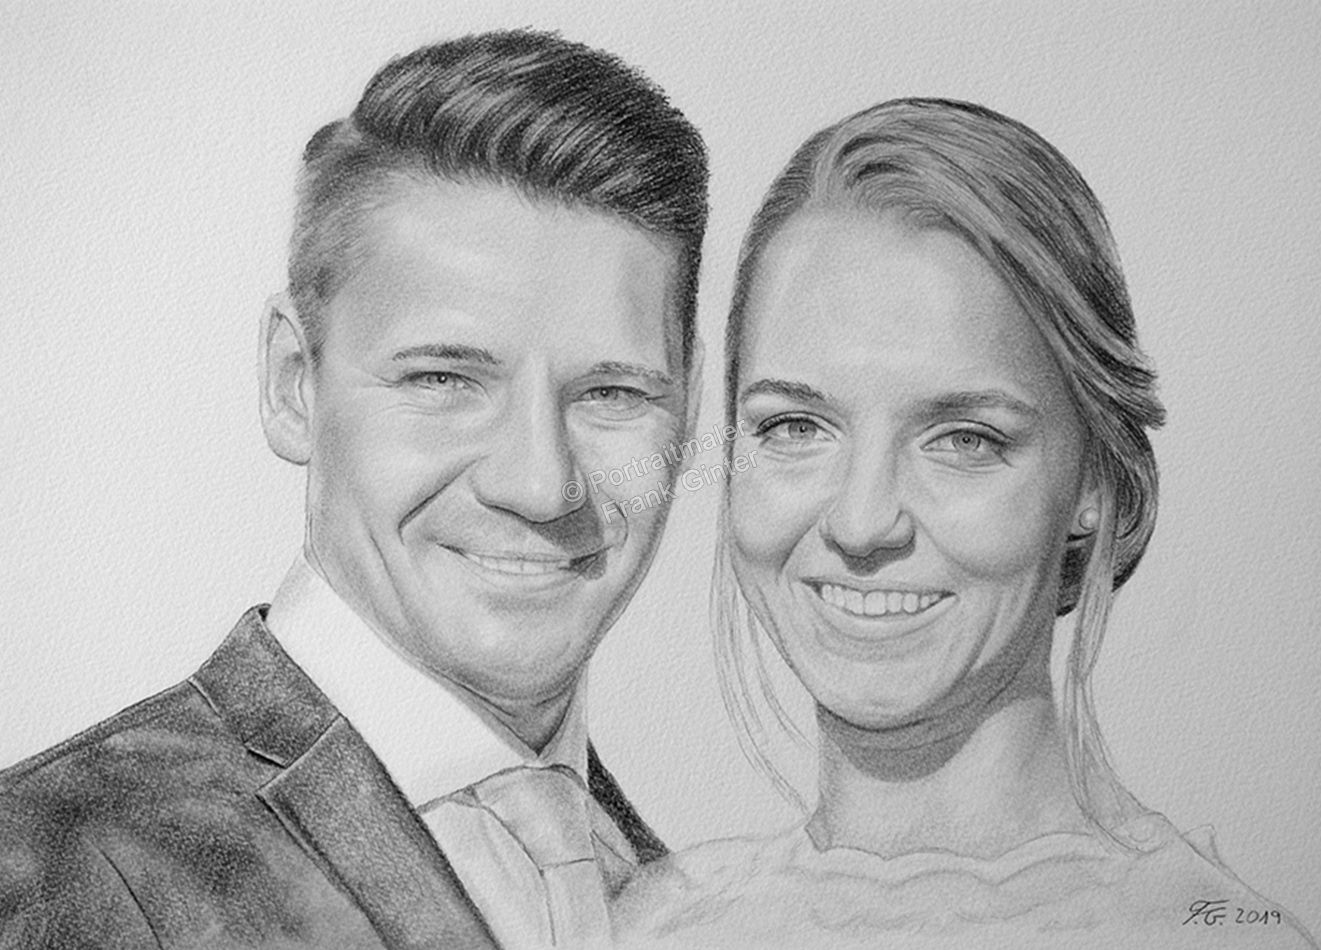 Bleistiftzeichnungen Portraitzeichnung von einem Hochzeitsfoto, Mann und Frau